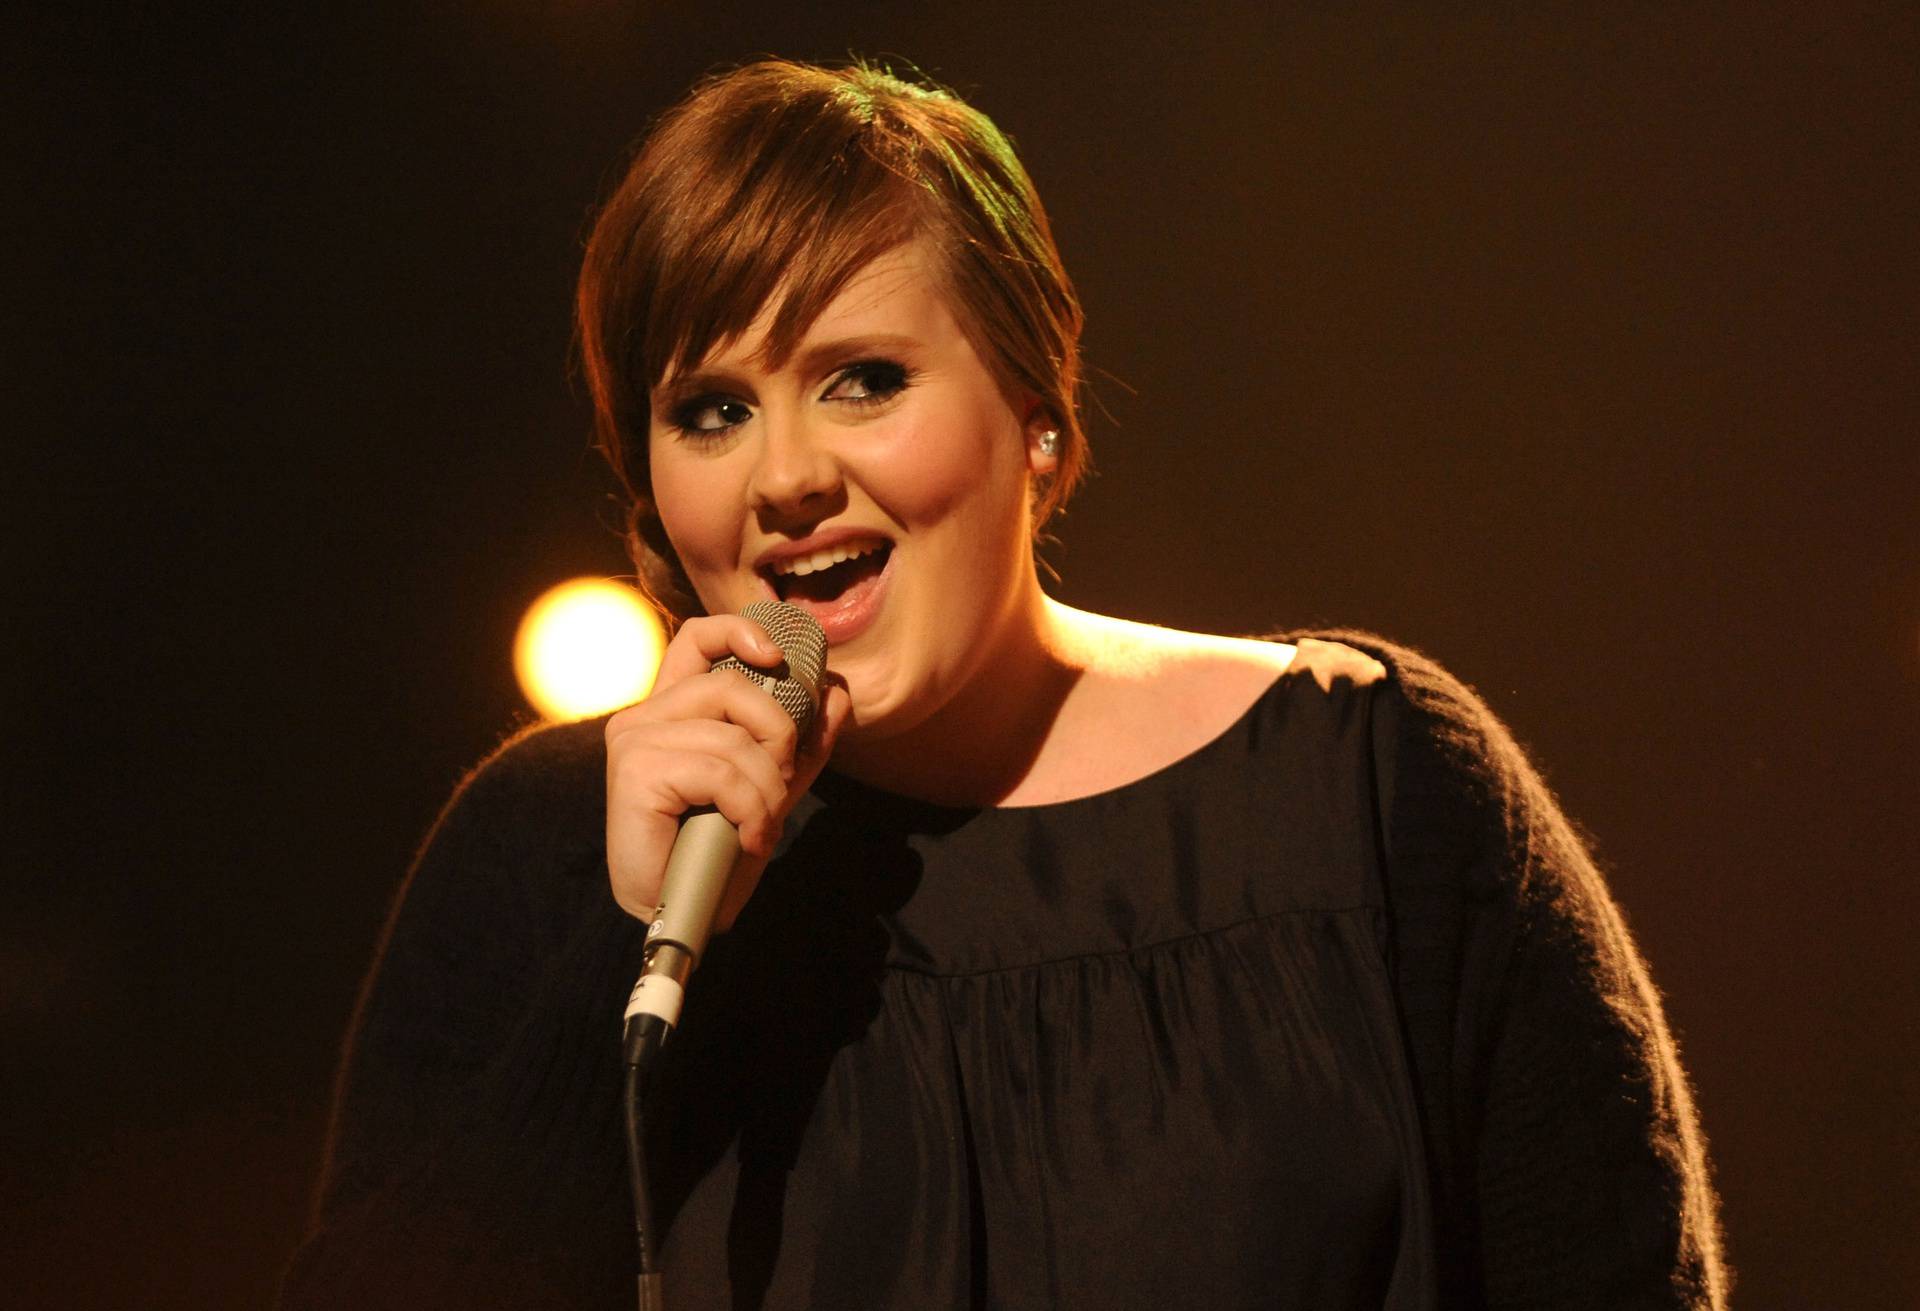 Pogledajte kako je diva Adele izgledala na svojoj prvoj dodjeli Brit Awards prije 14 godina